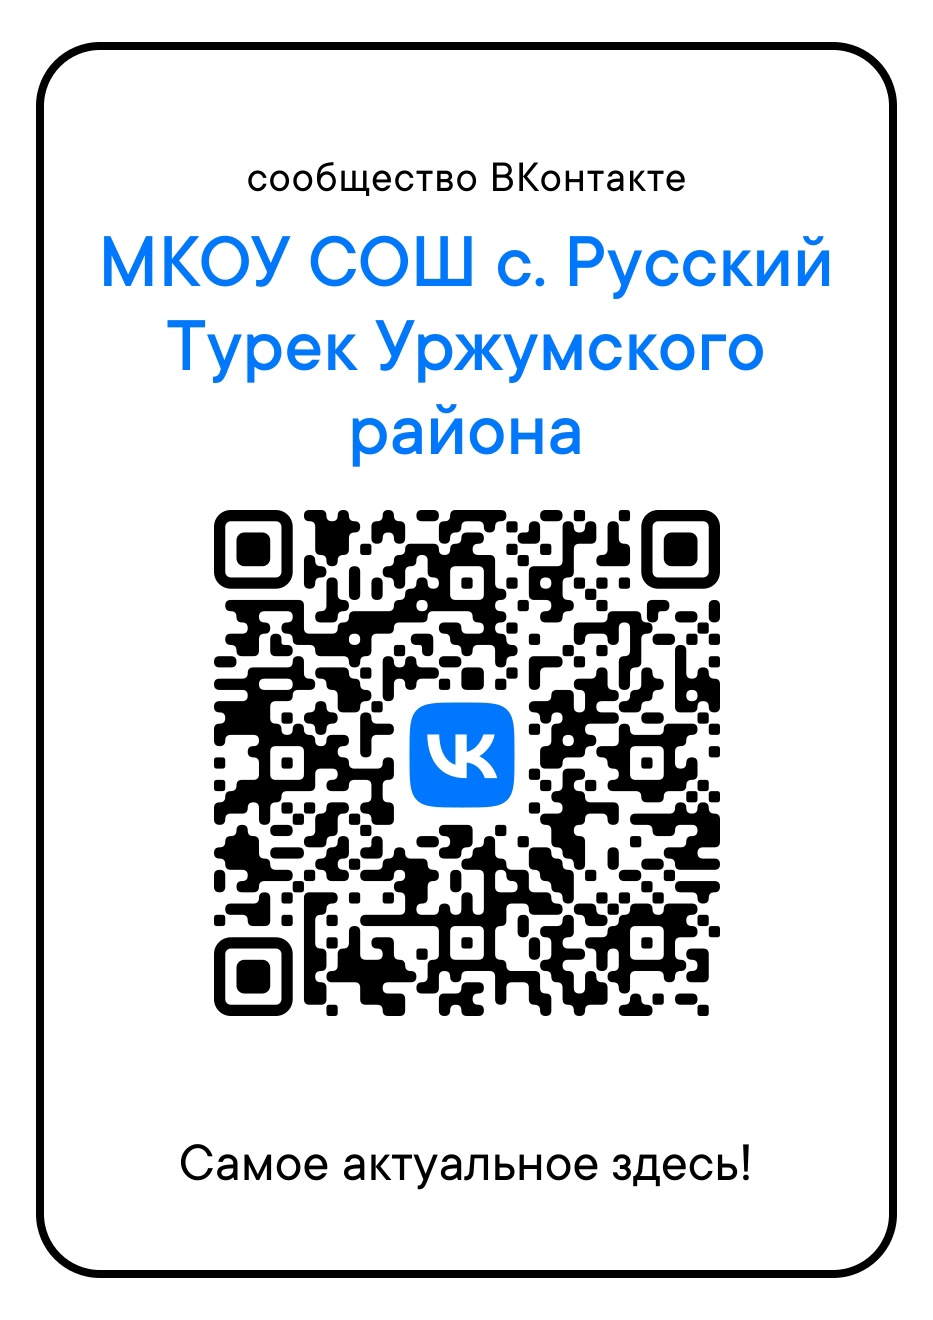 QR-код нашего сообщества в c социальной сети Вконтакте.